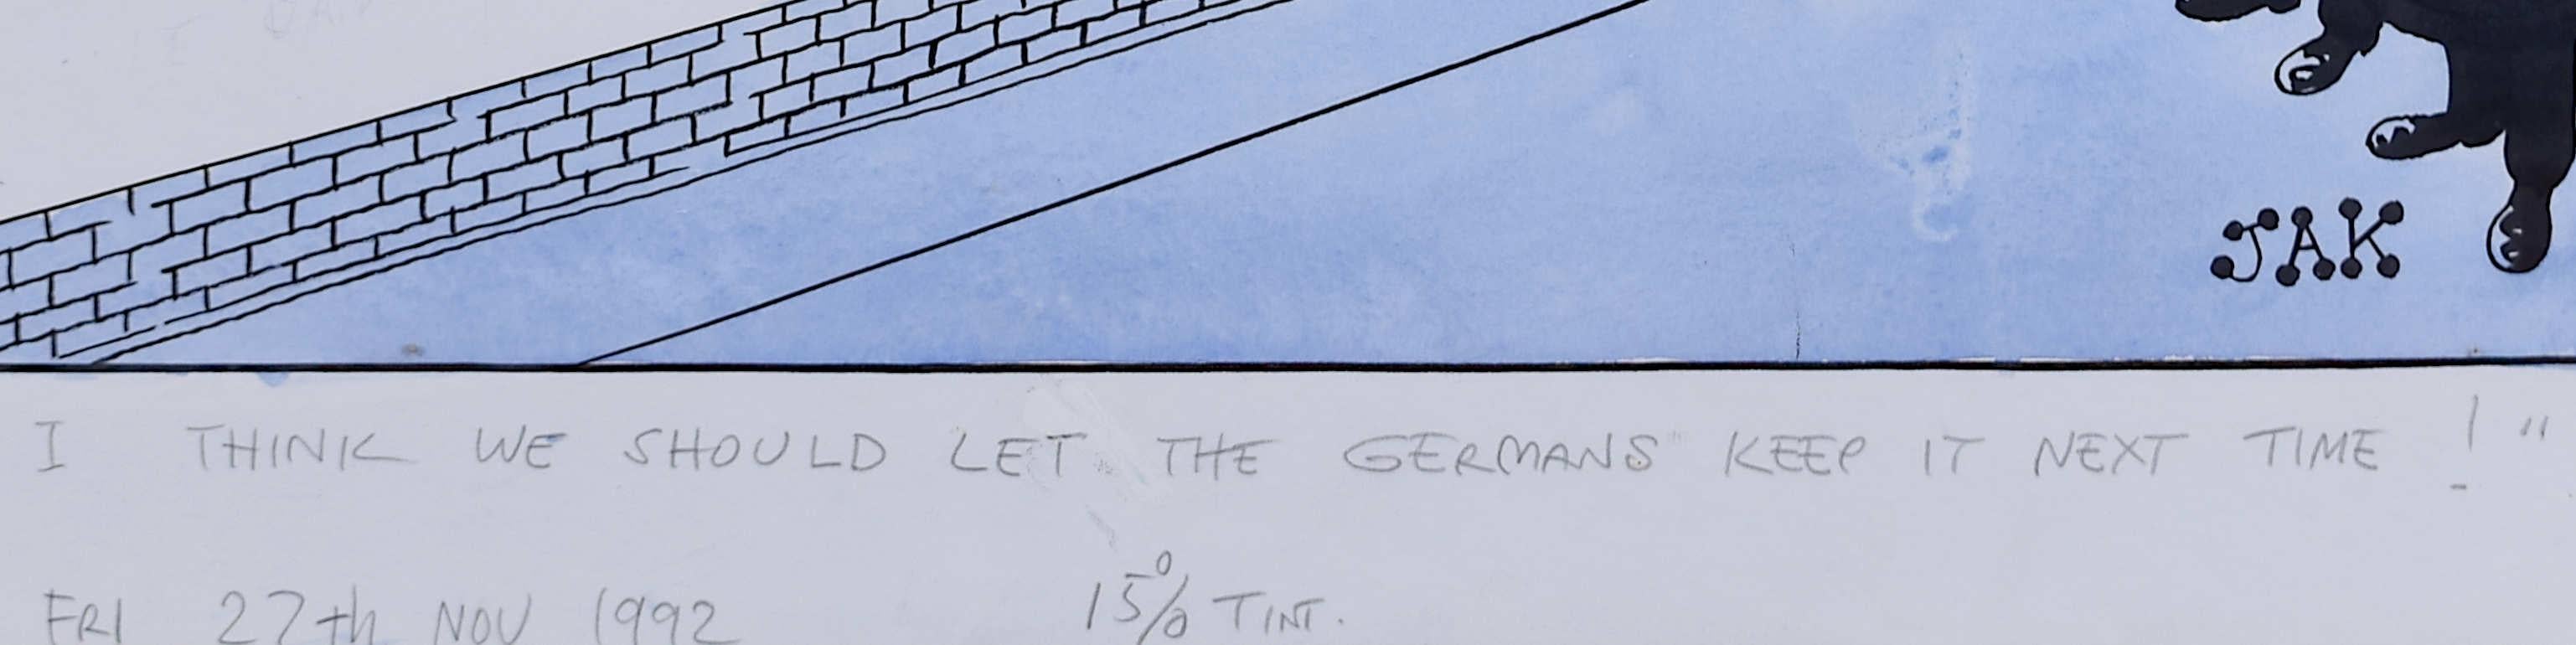 JAK-Zeichnung „Ich glaube, wir sollten den Deutschen Frankreich im nächsten Jahr beibehalten“, Aquarell (Moderne), Art, von 'JAK' Raymond Allen Jackson